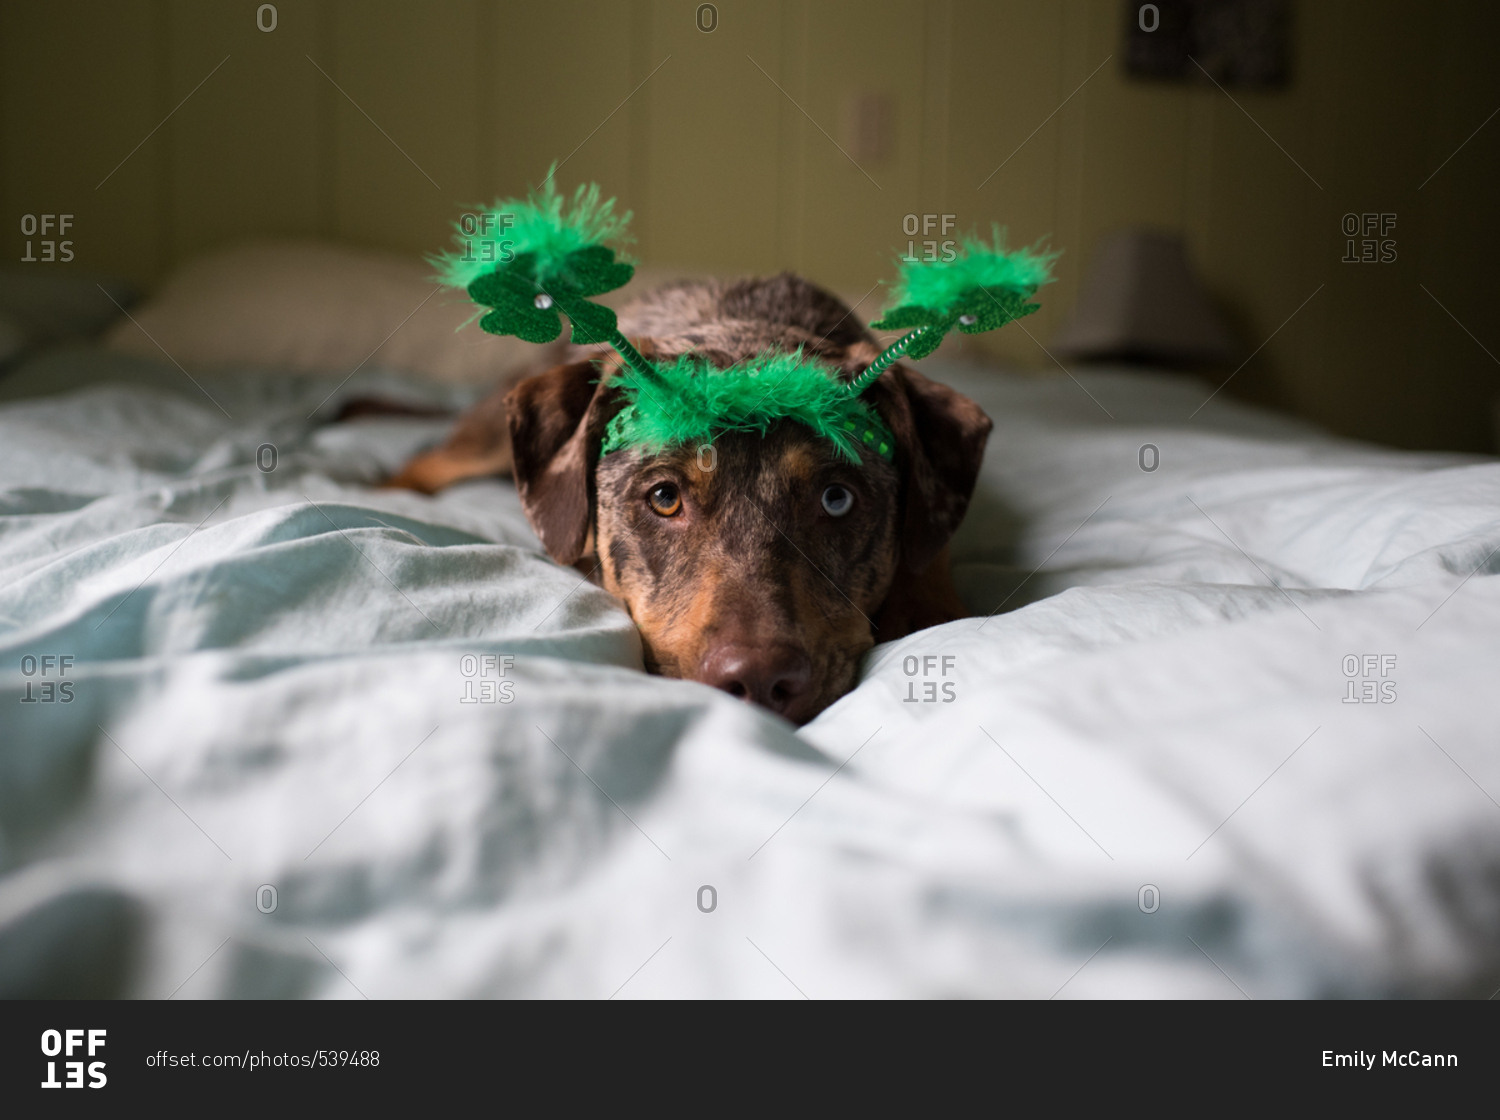 Dog on bed wearing green headband